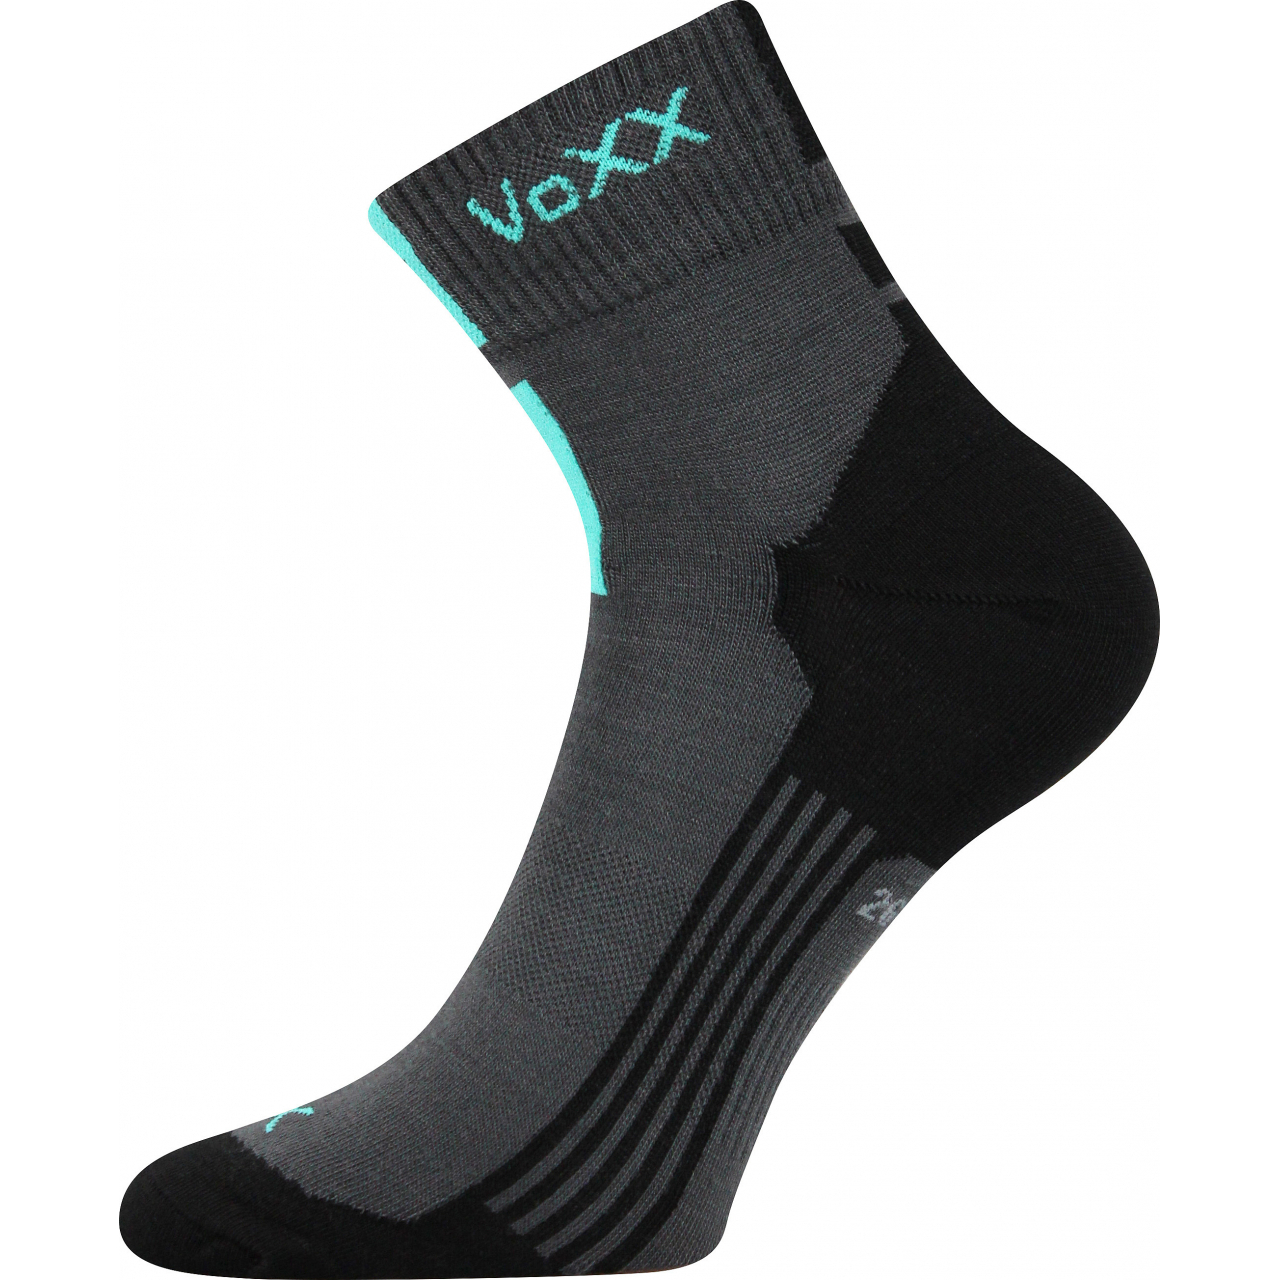 Ponožky unisex klasické Voxx Mostan silproX - tmavě šedé, 35-38